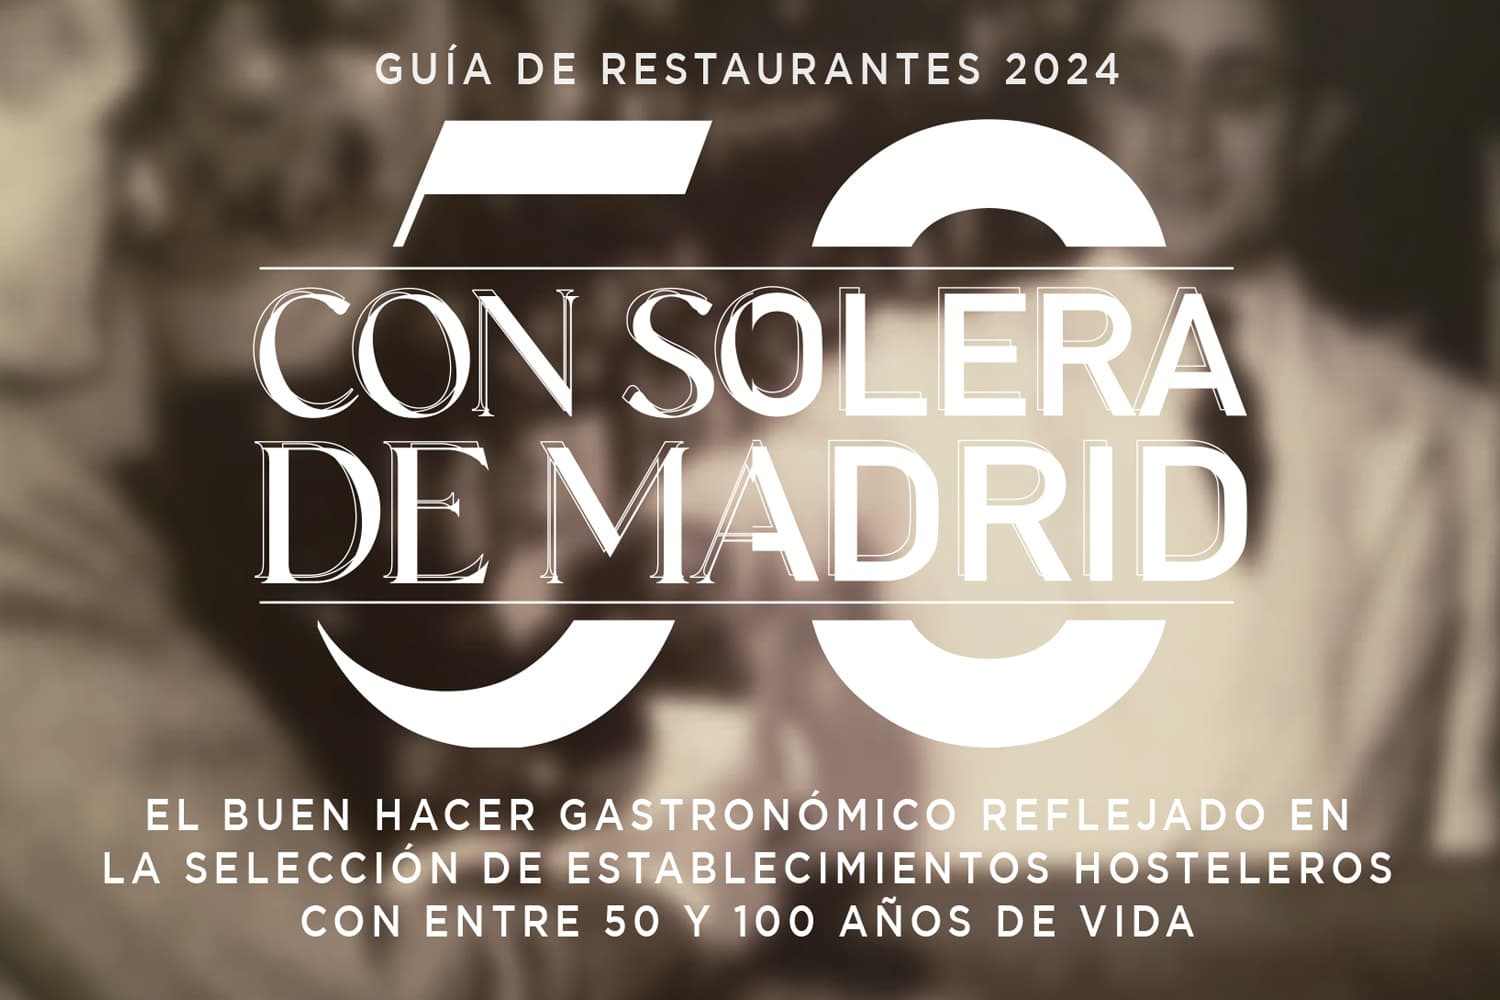 Establecimientos with pedigree “Con Solera" 2024